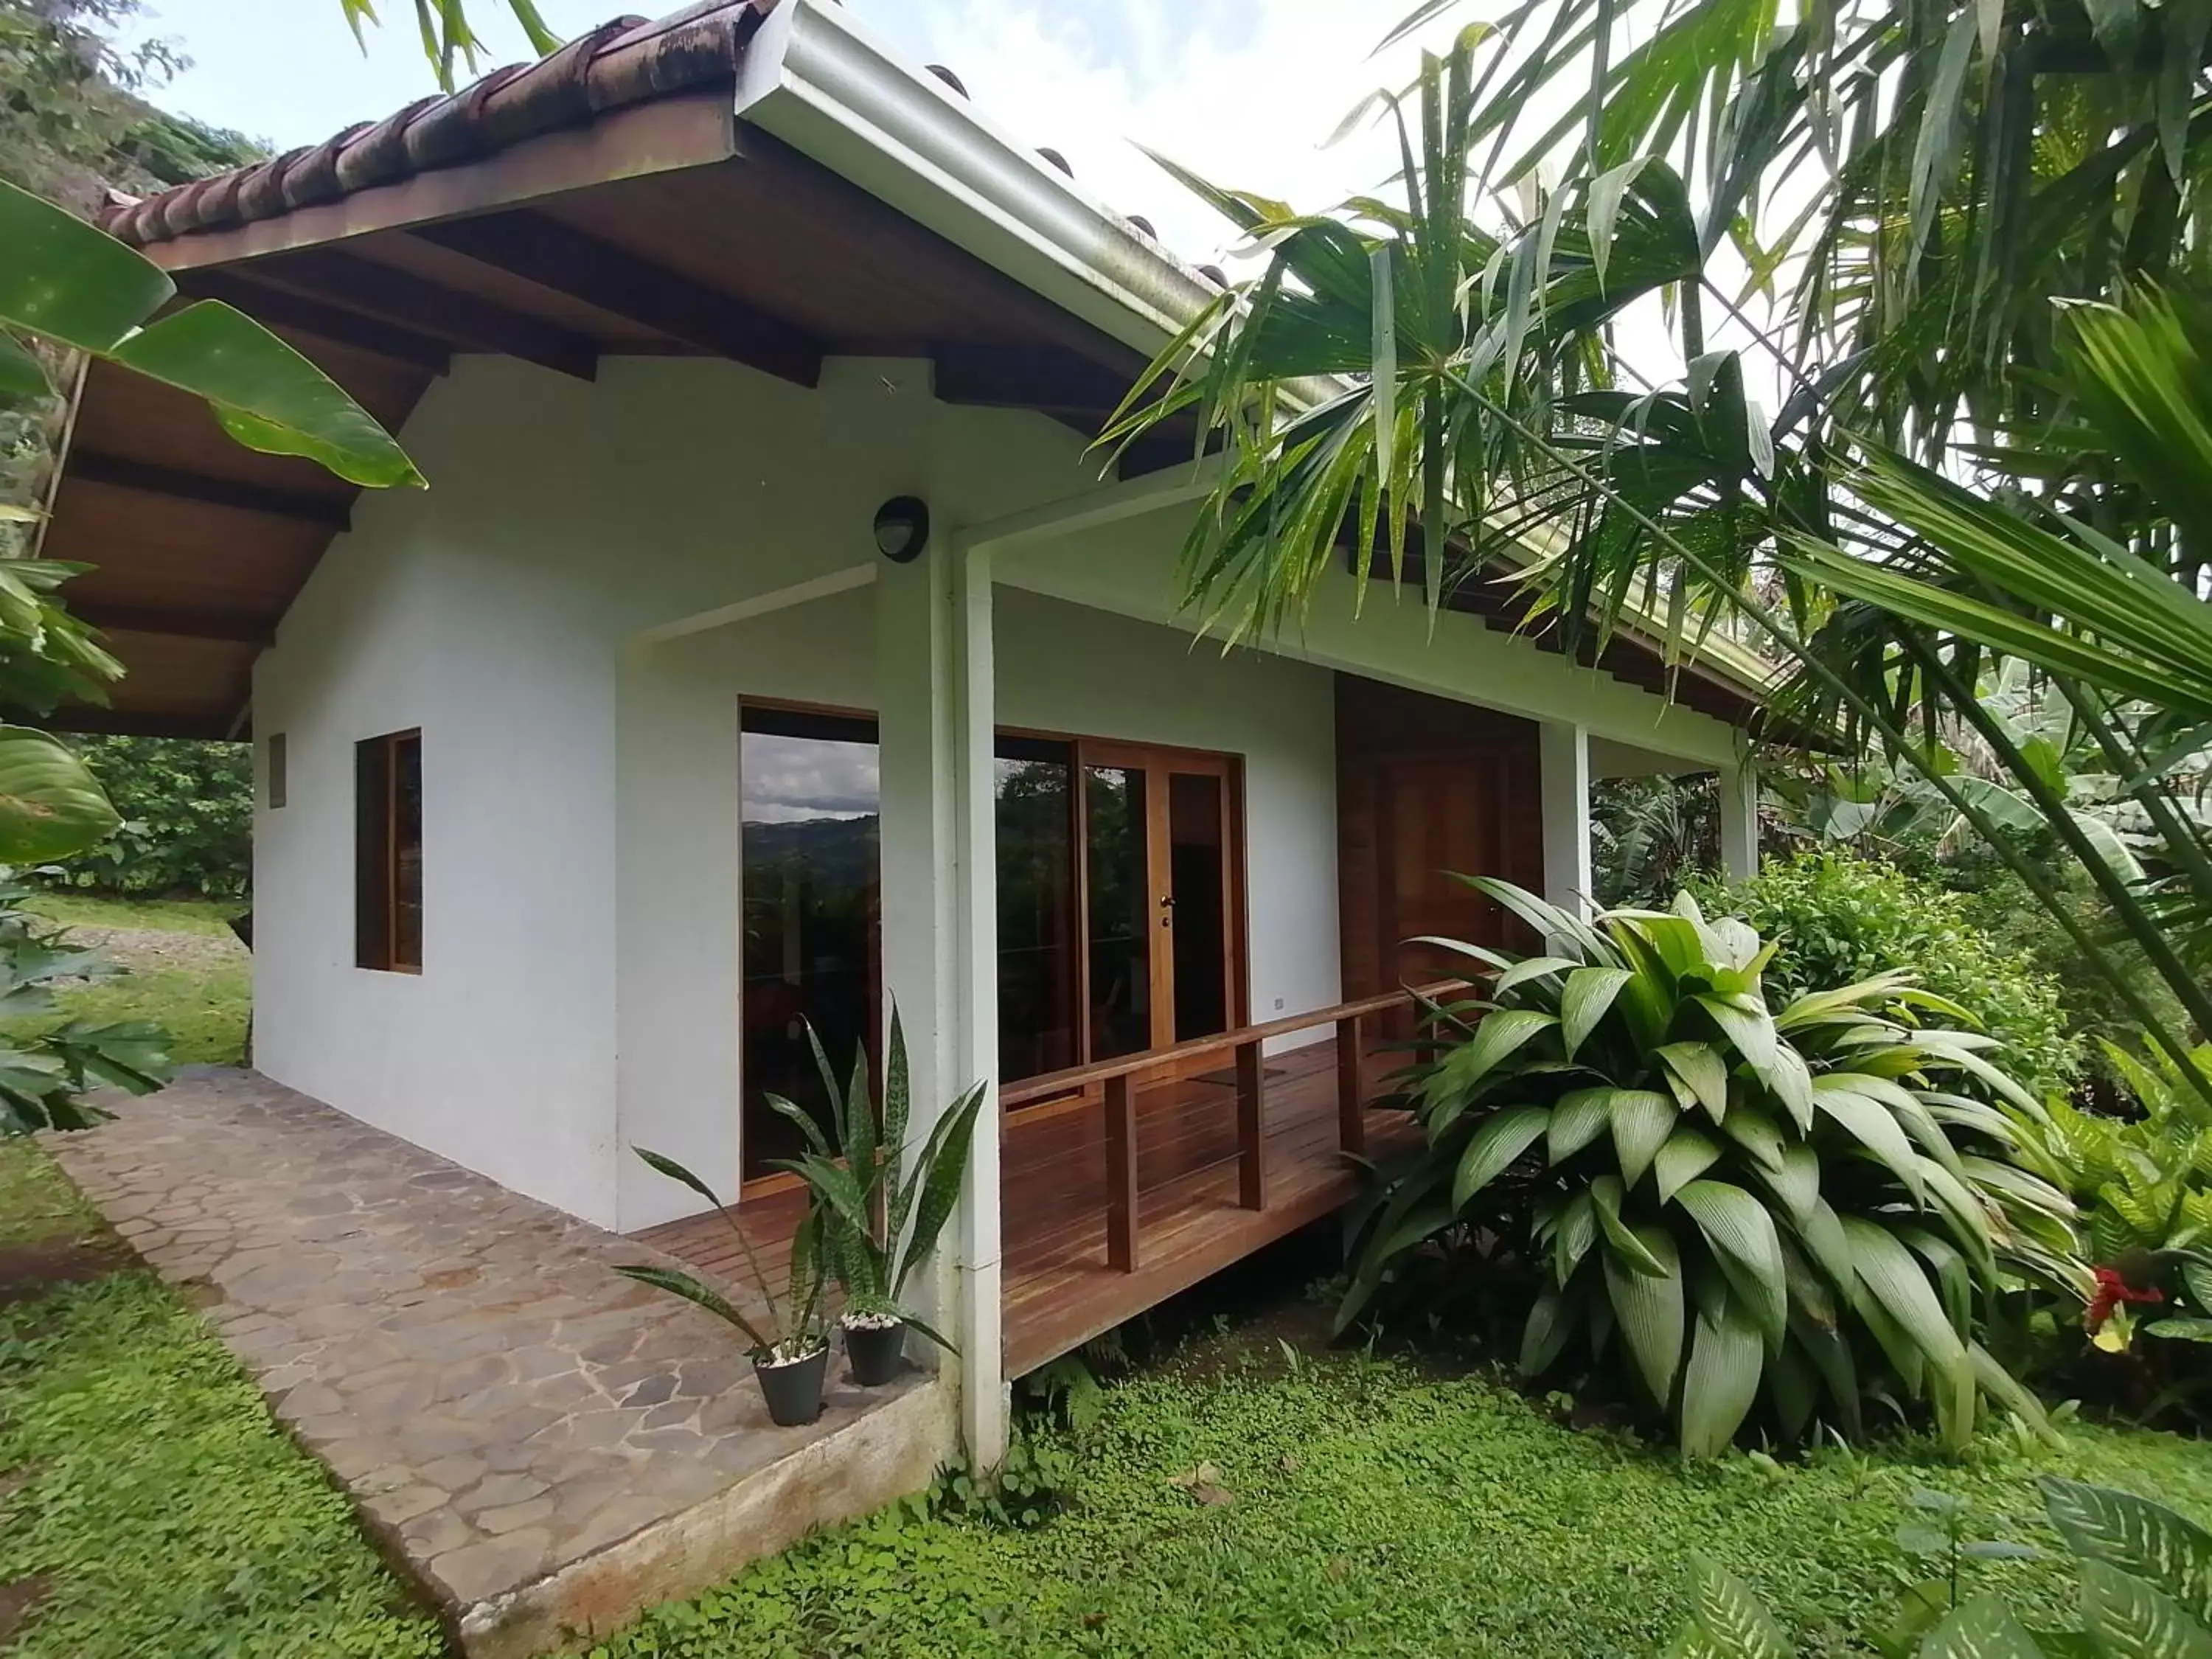 Property building in La Ceiba Tree Lodge